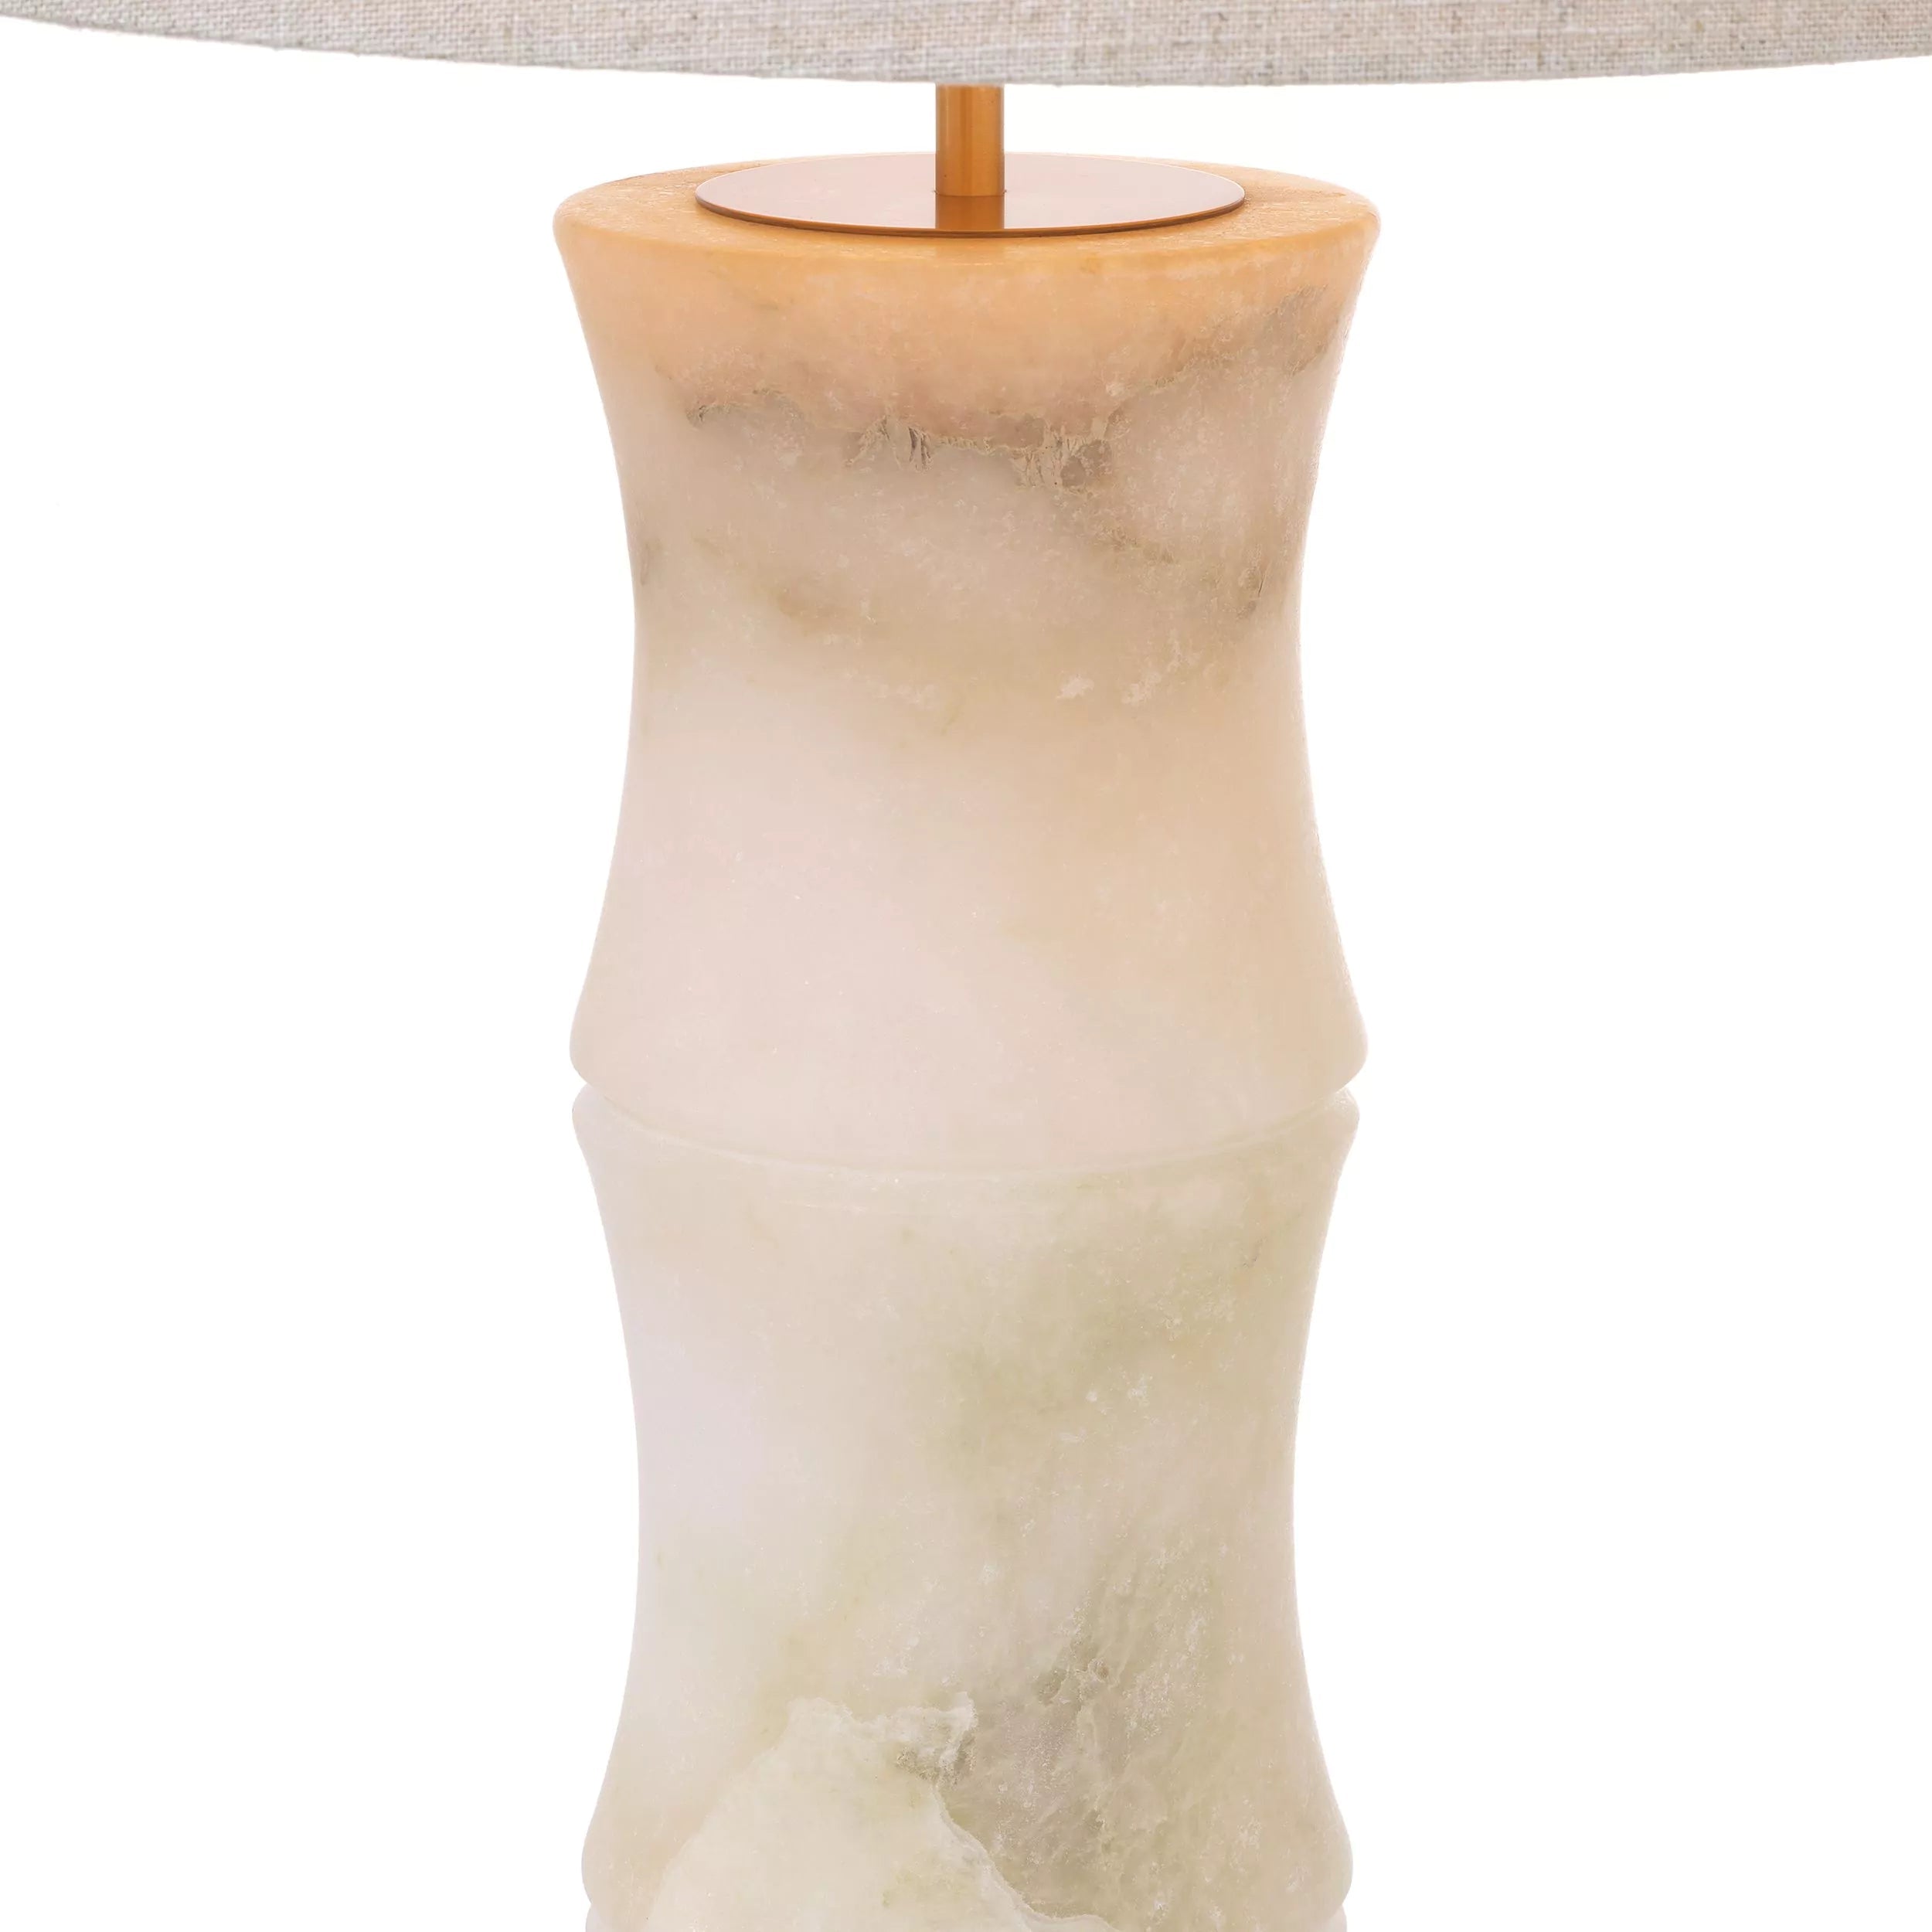 Bonny Table Lamp - Eichholtz - Luxury Lighting Boutique